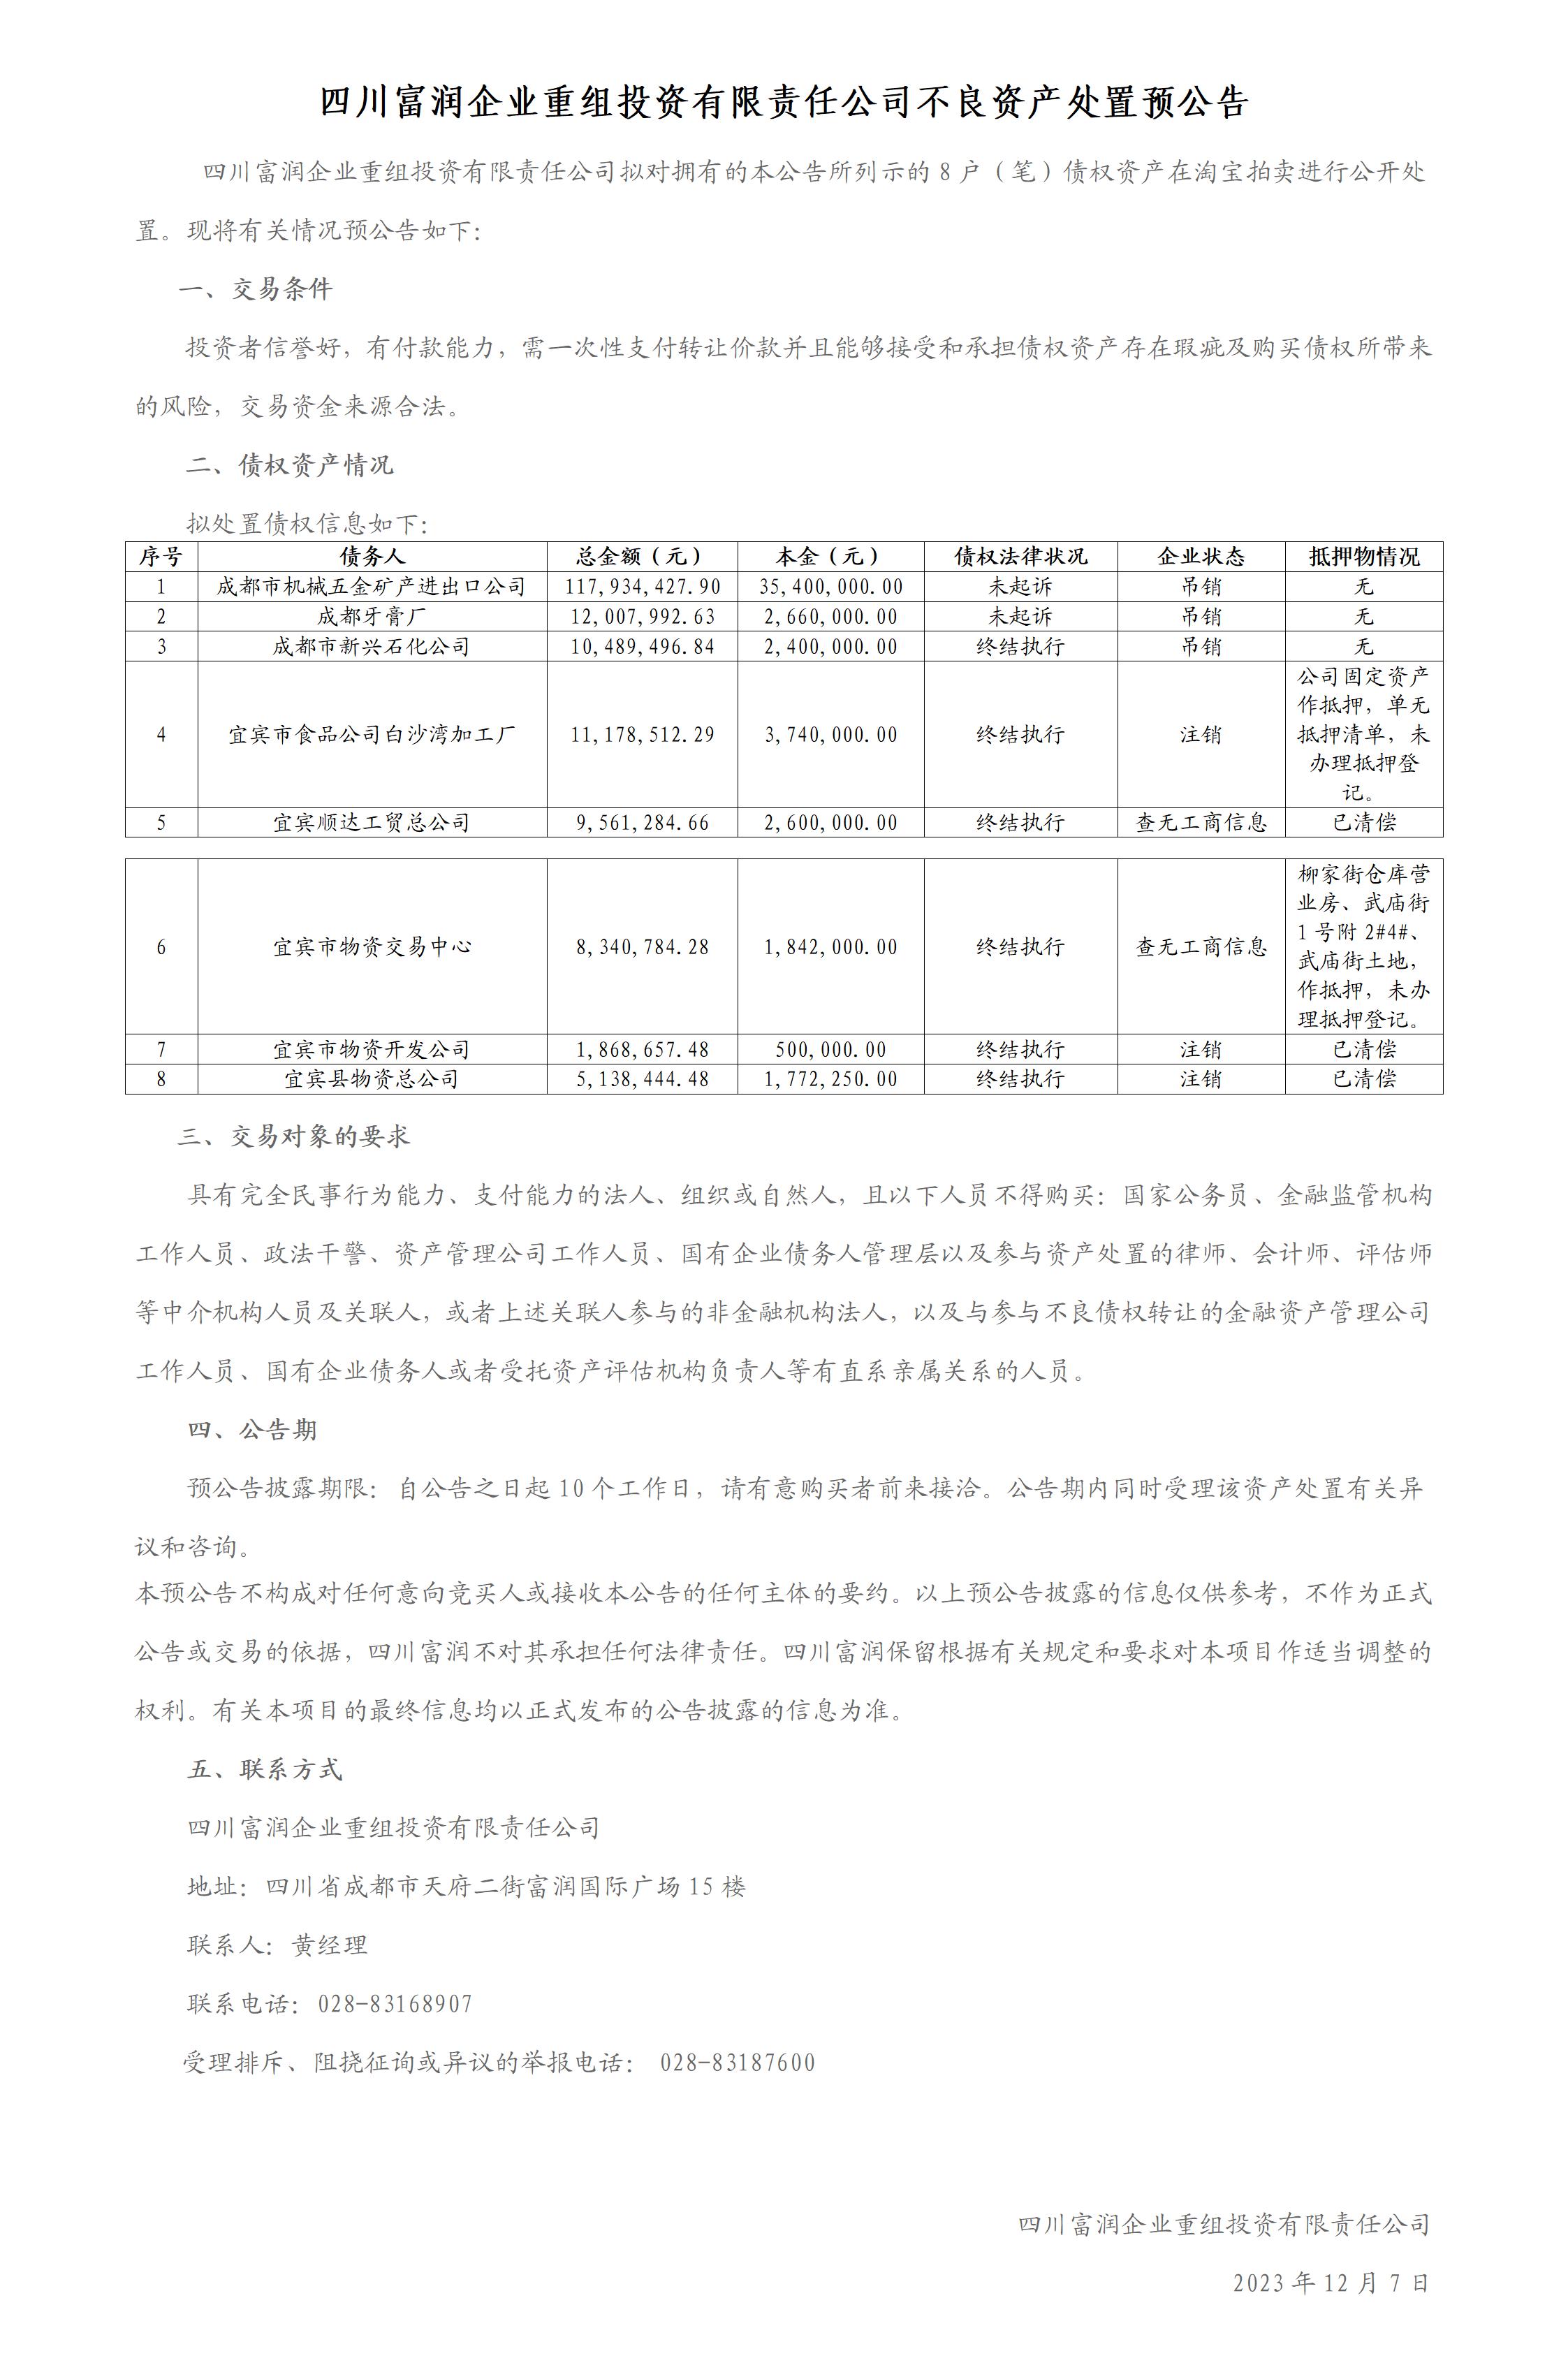 华融资产包8户债权拍卖预公告12-5_01(1).jpg